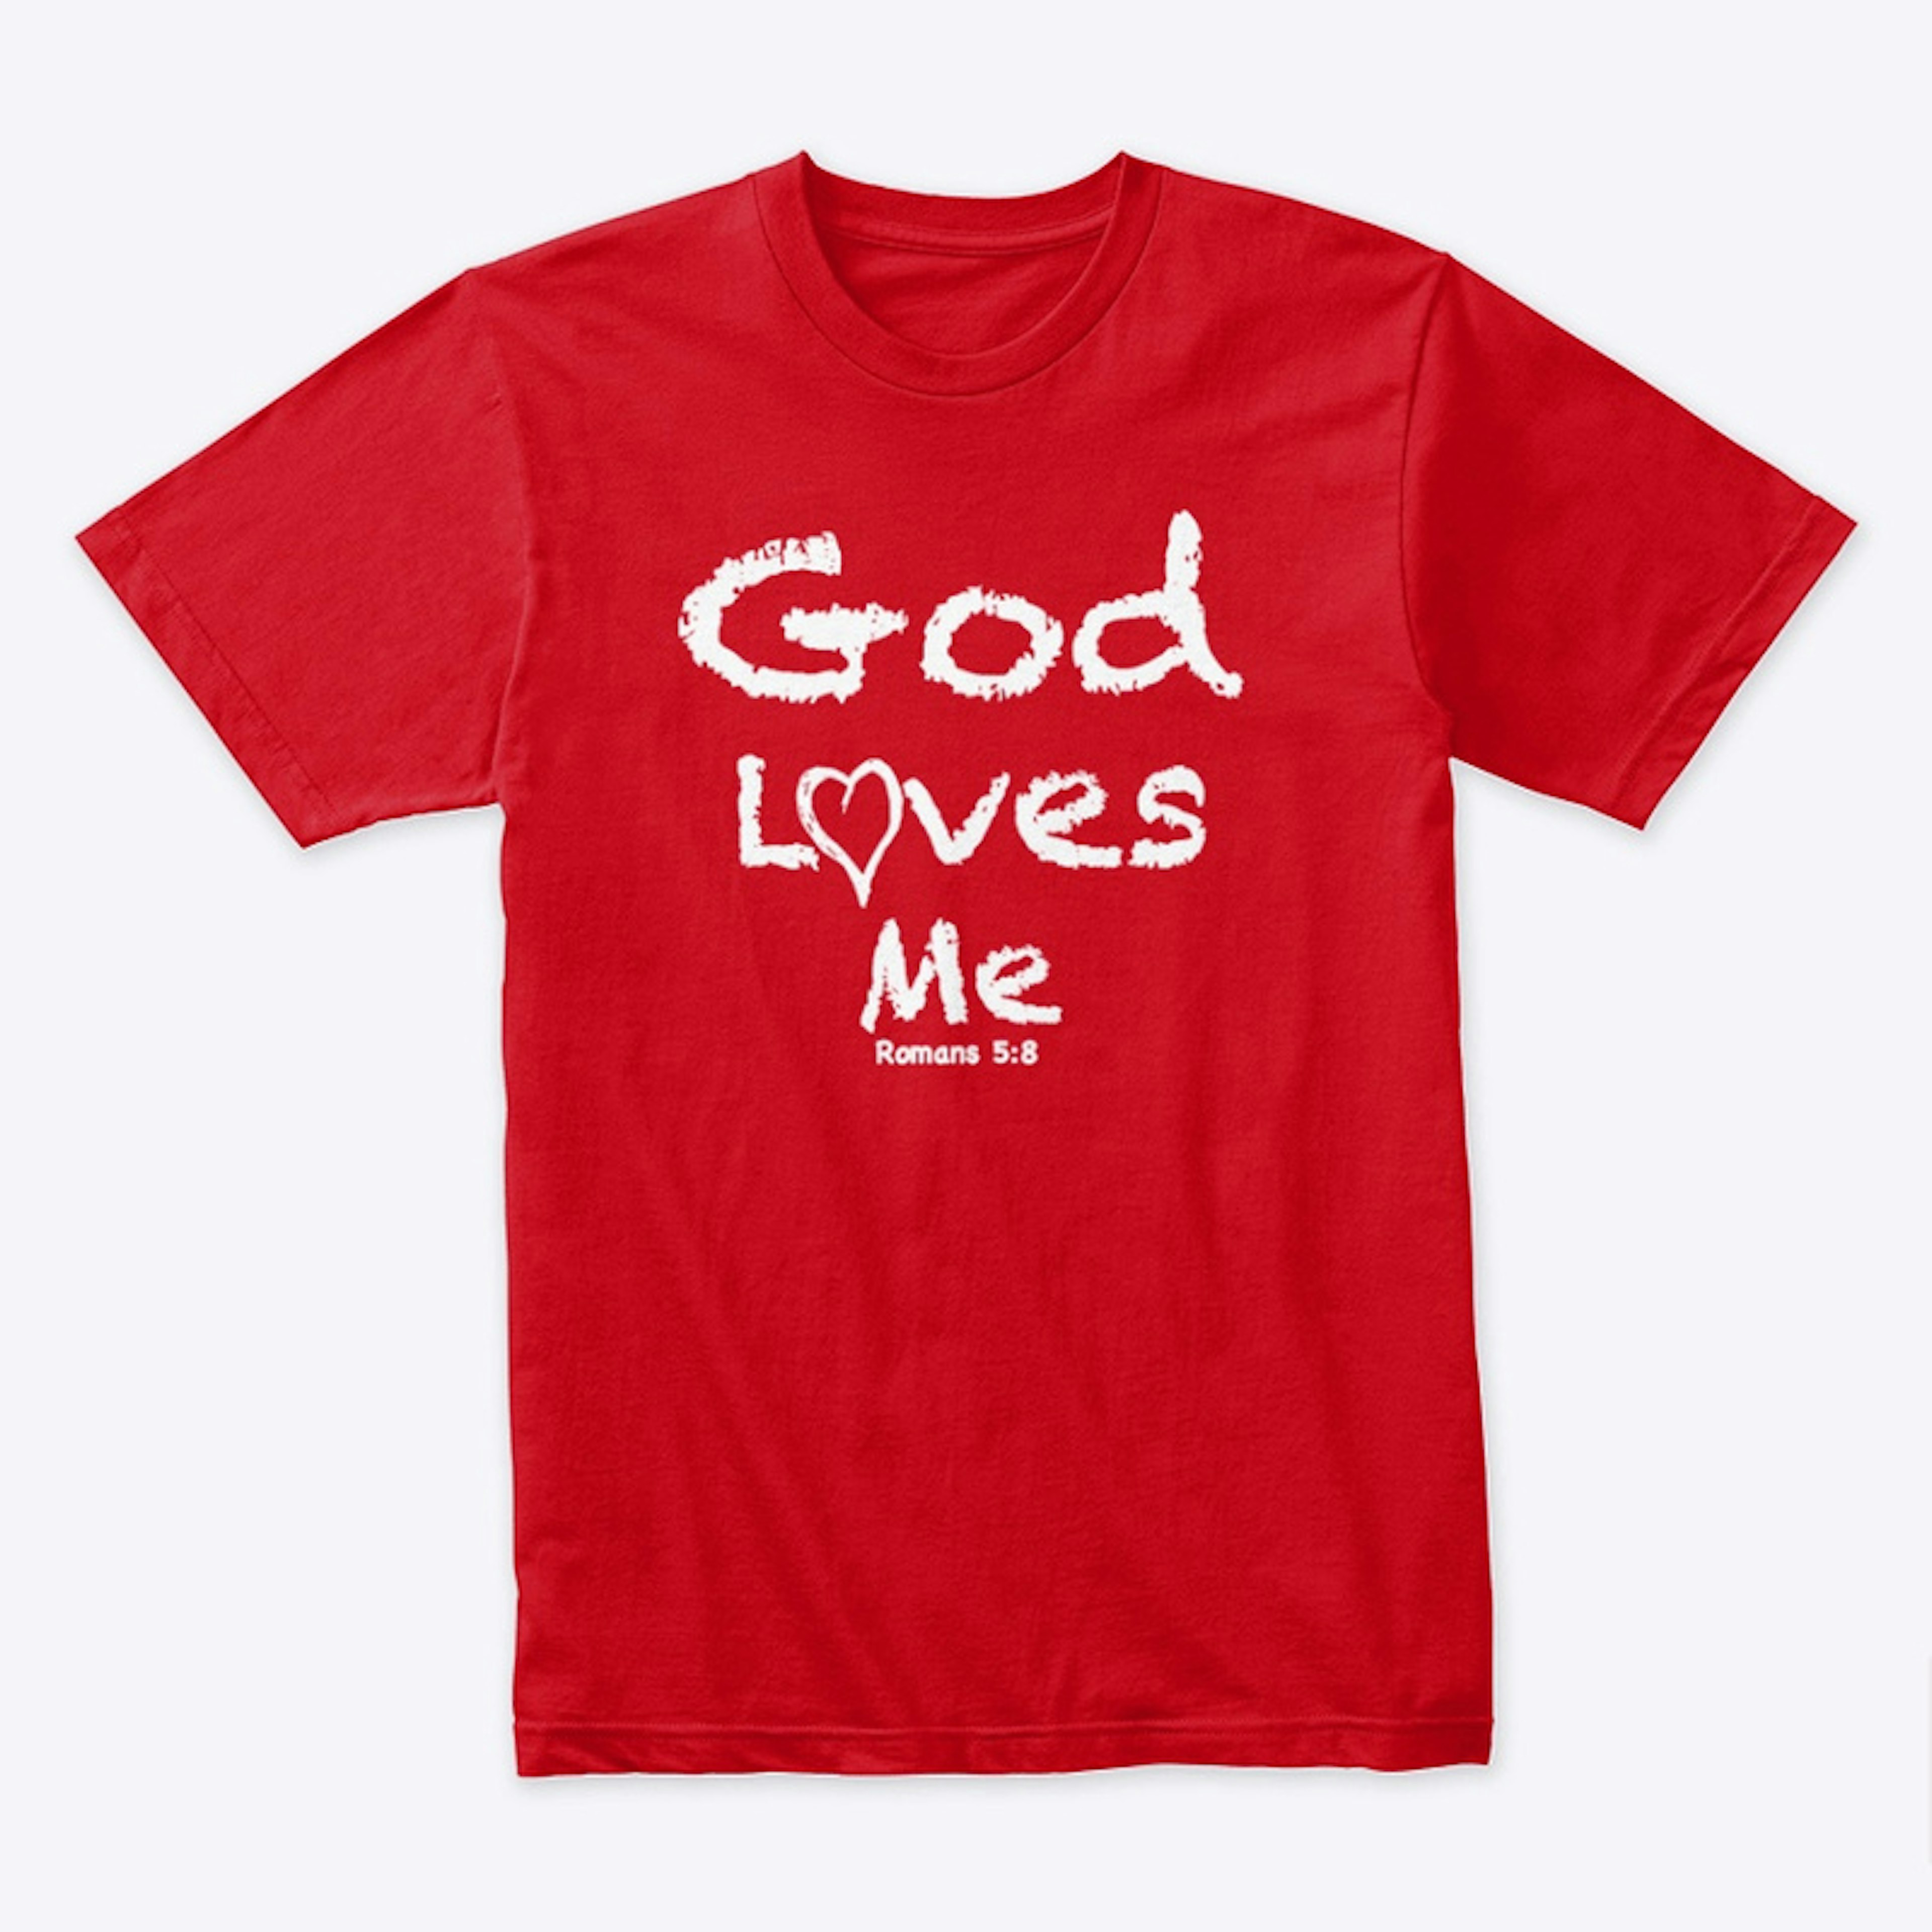 God Loves Me